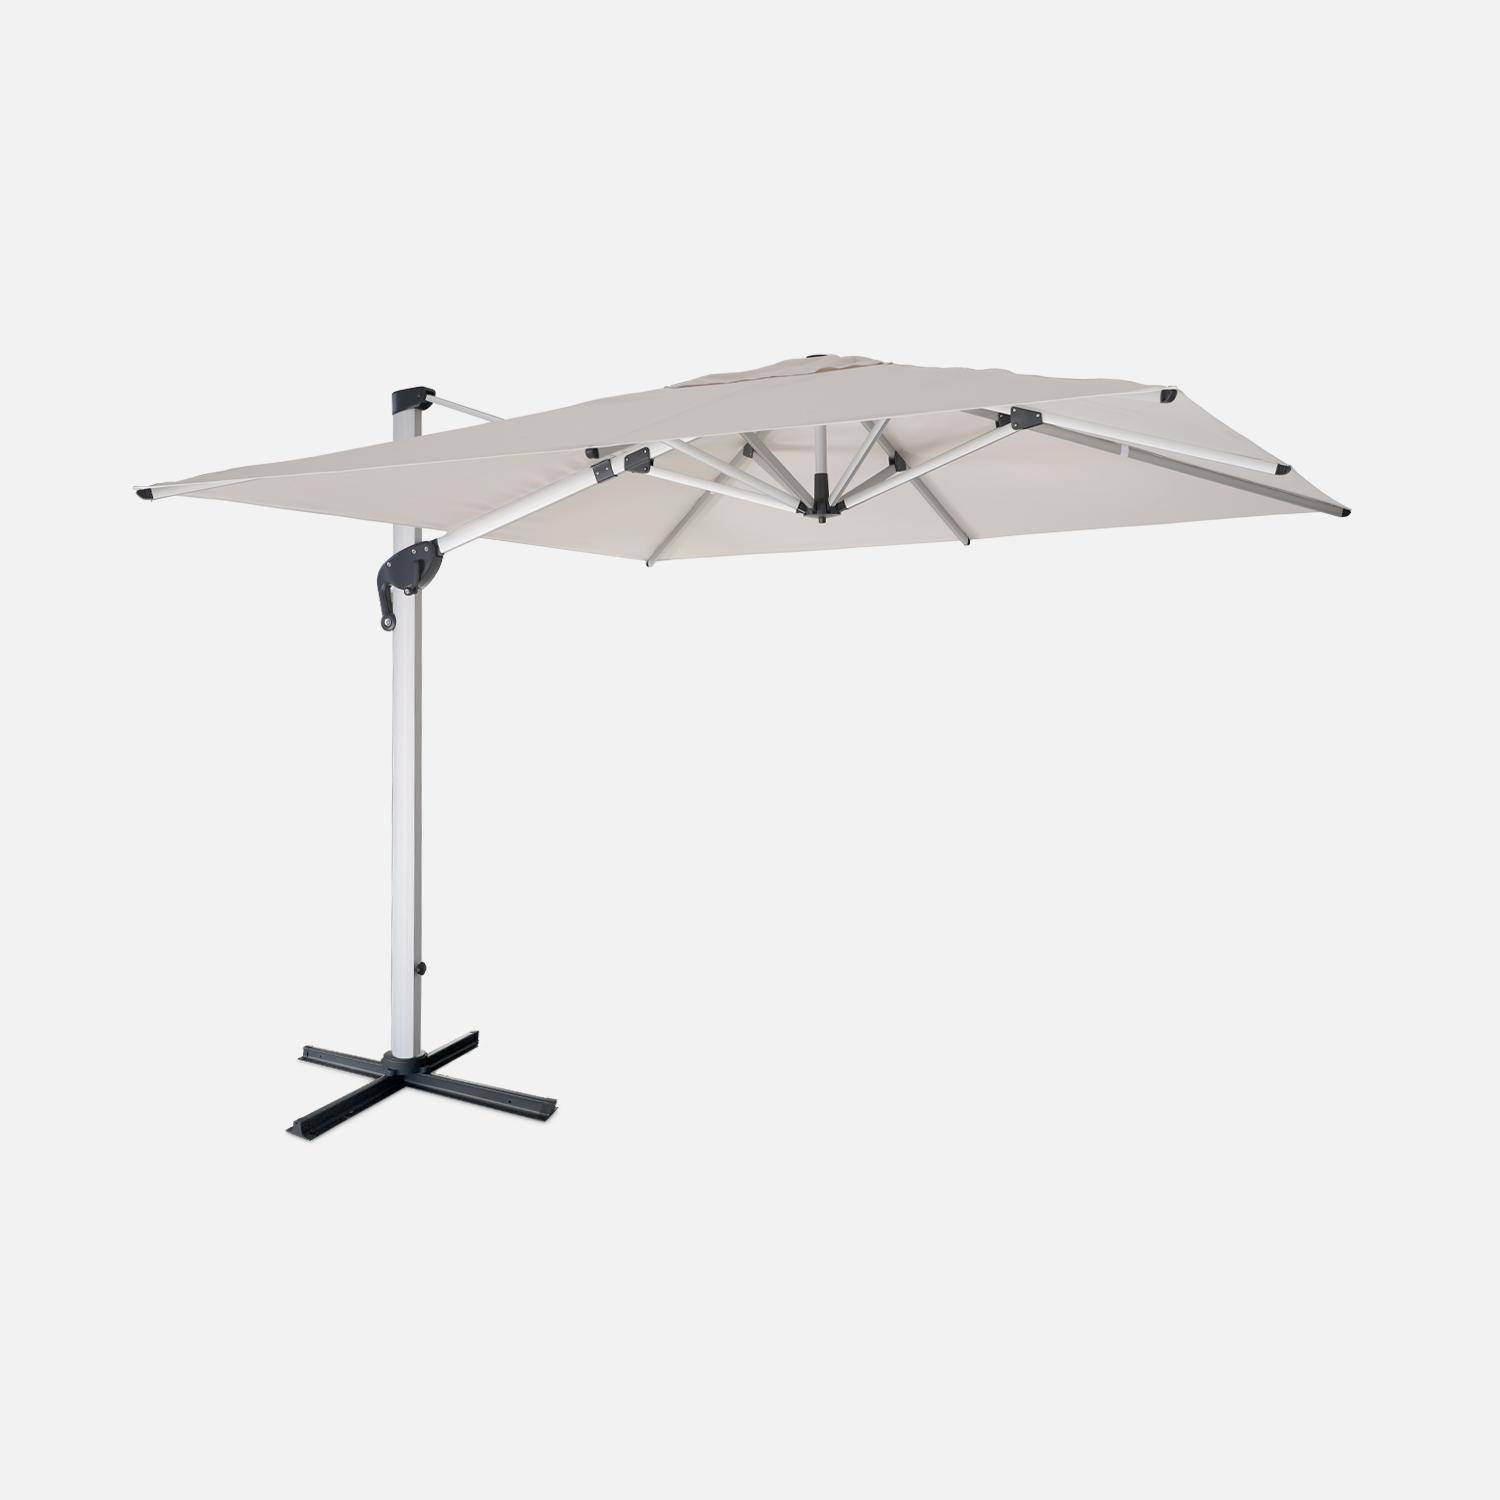 Topkwaliteit parasol, 3x3m, beige polyester doek, geanodiseerd aluminium frame, hoes inbegrepen,sweeek,Photo1